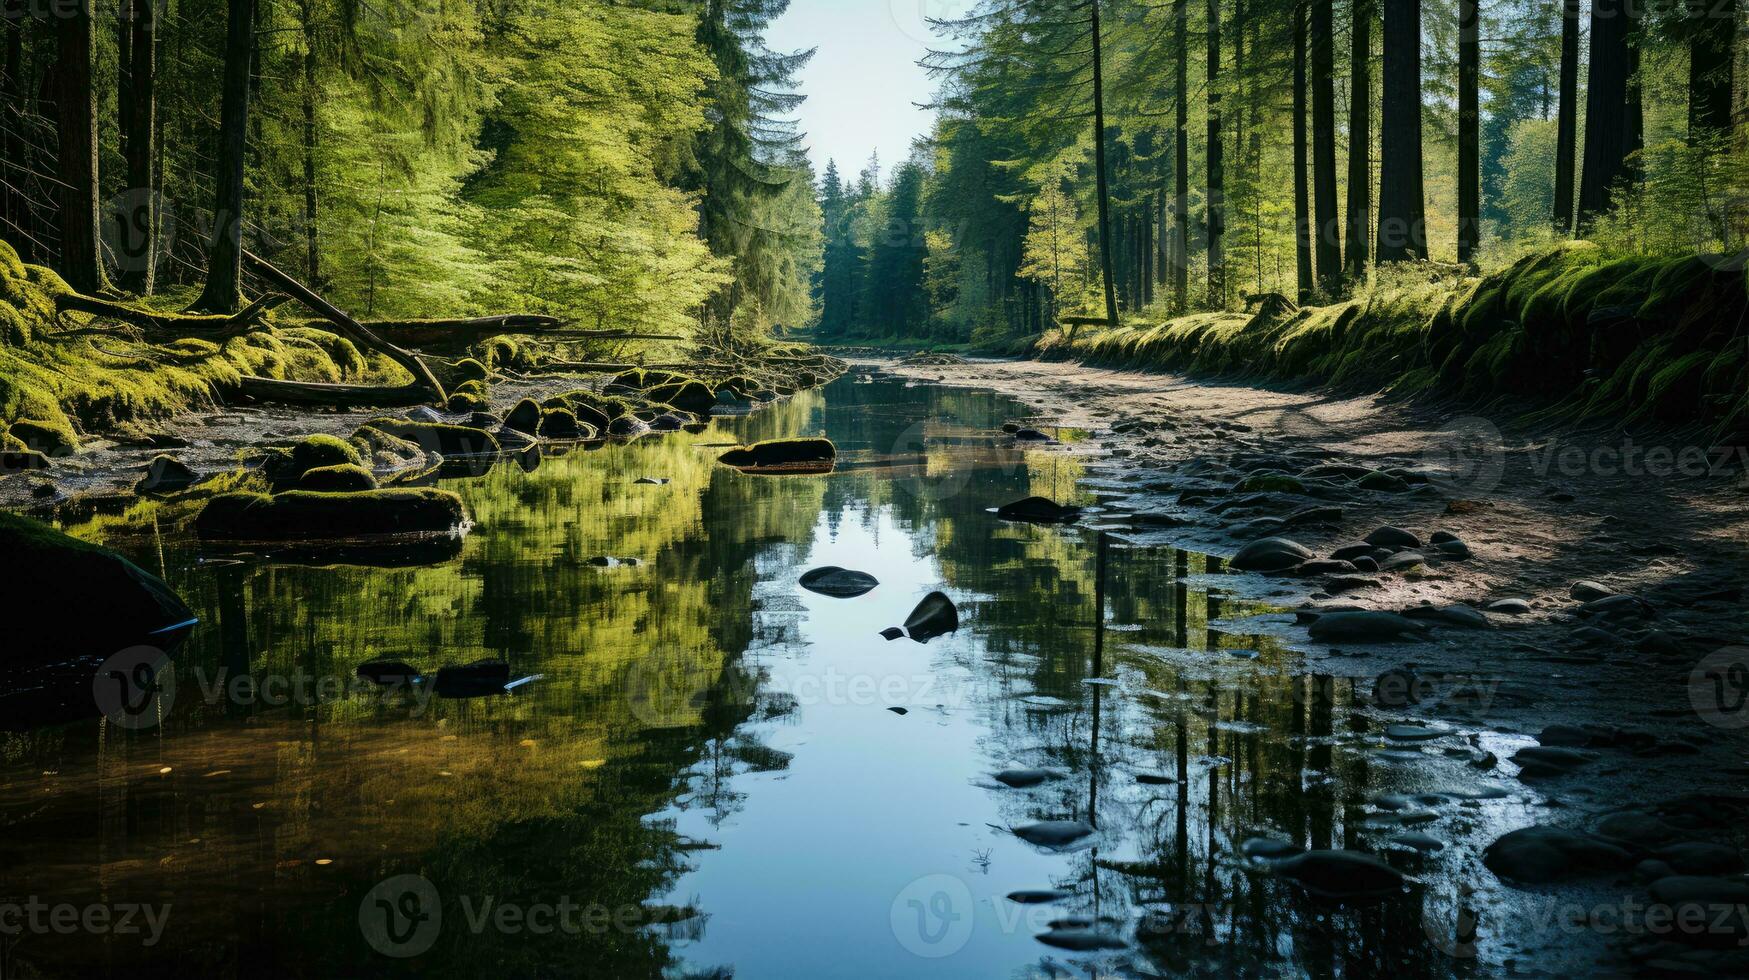 foresta fiume silenzio la tranquillità grazia paesaggio armonia riposo quiete unità armonia fotografia foto